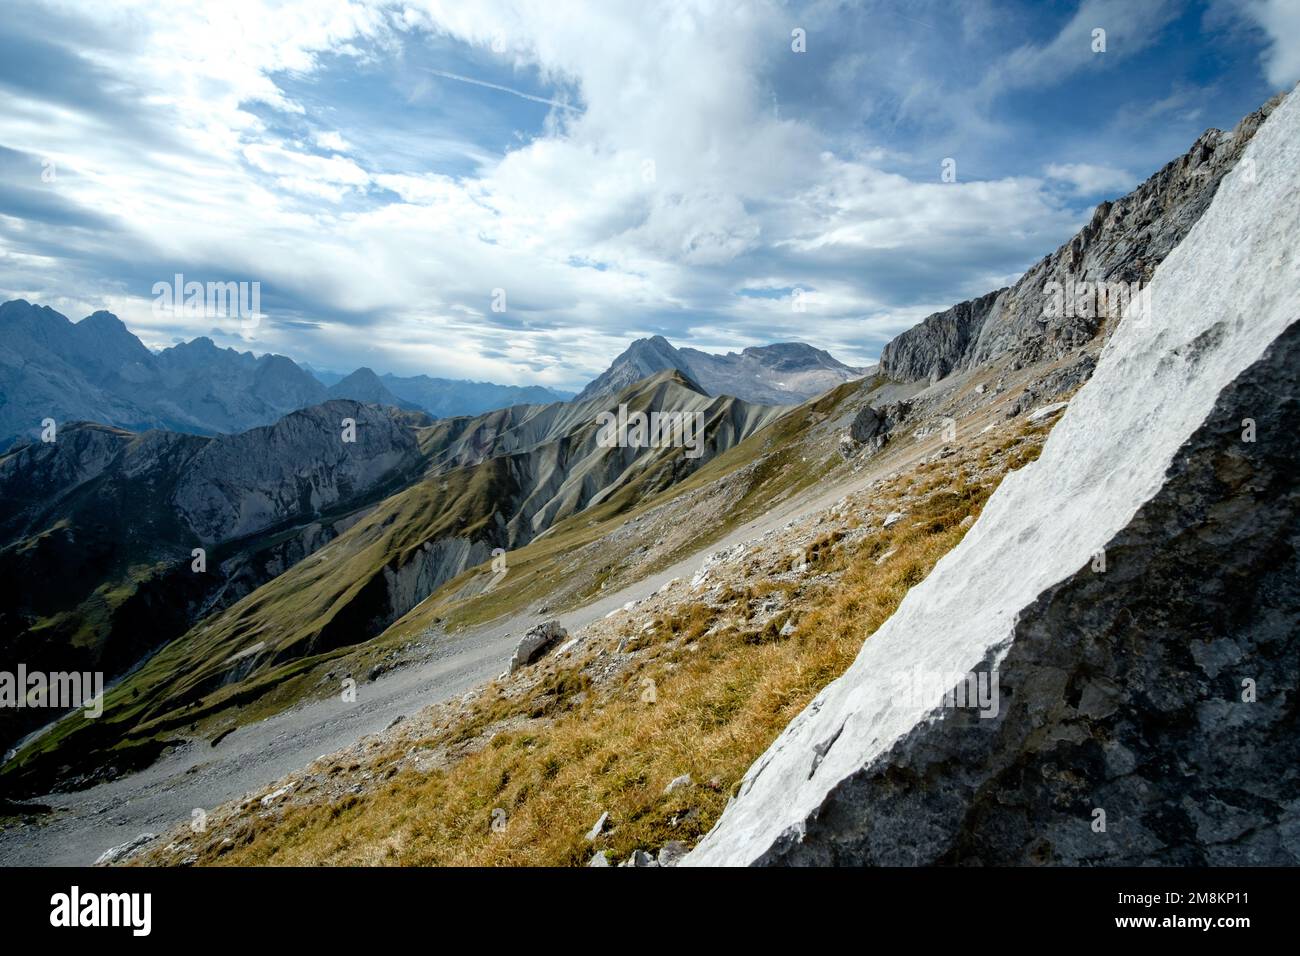 Alpenlandschaft im Wettersteingebirge Stock Photo